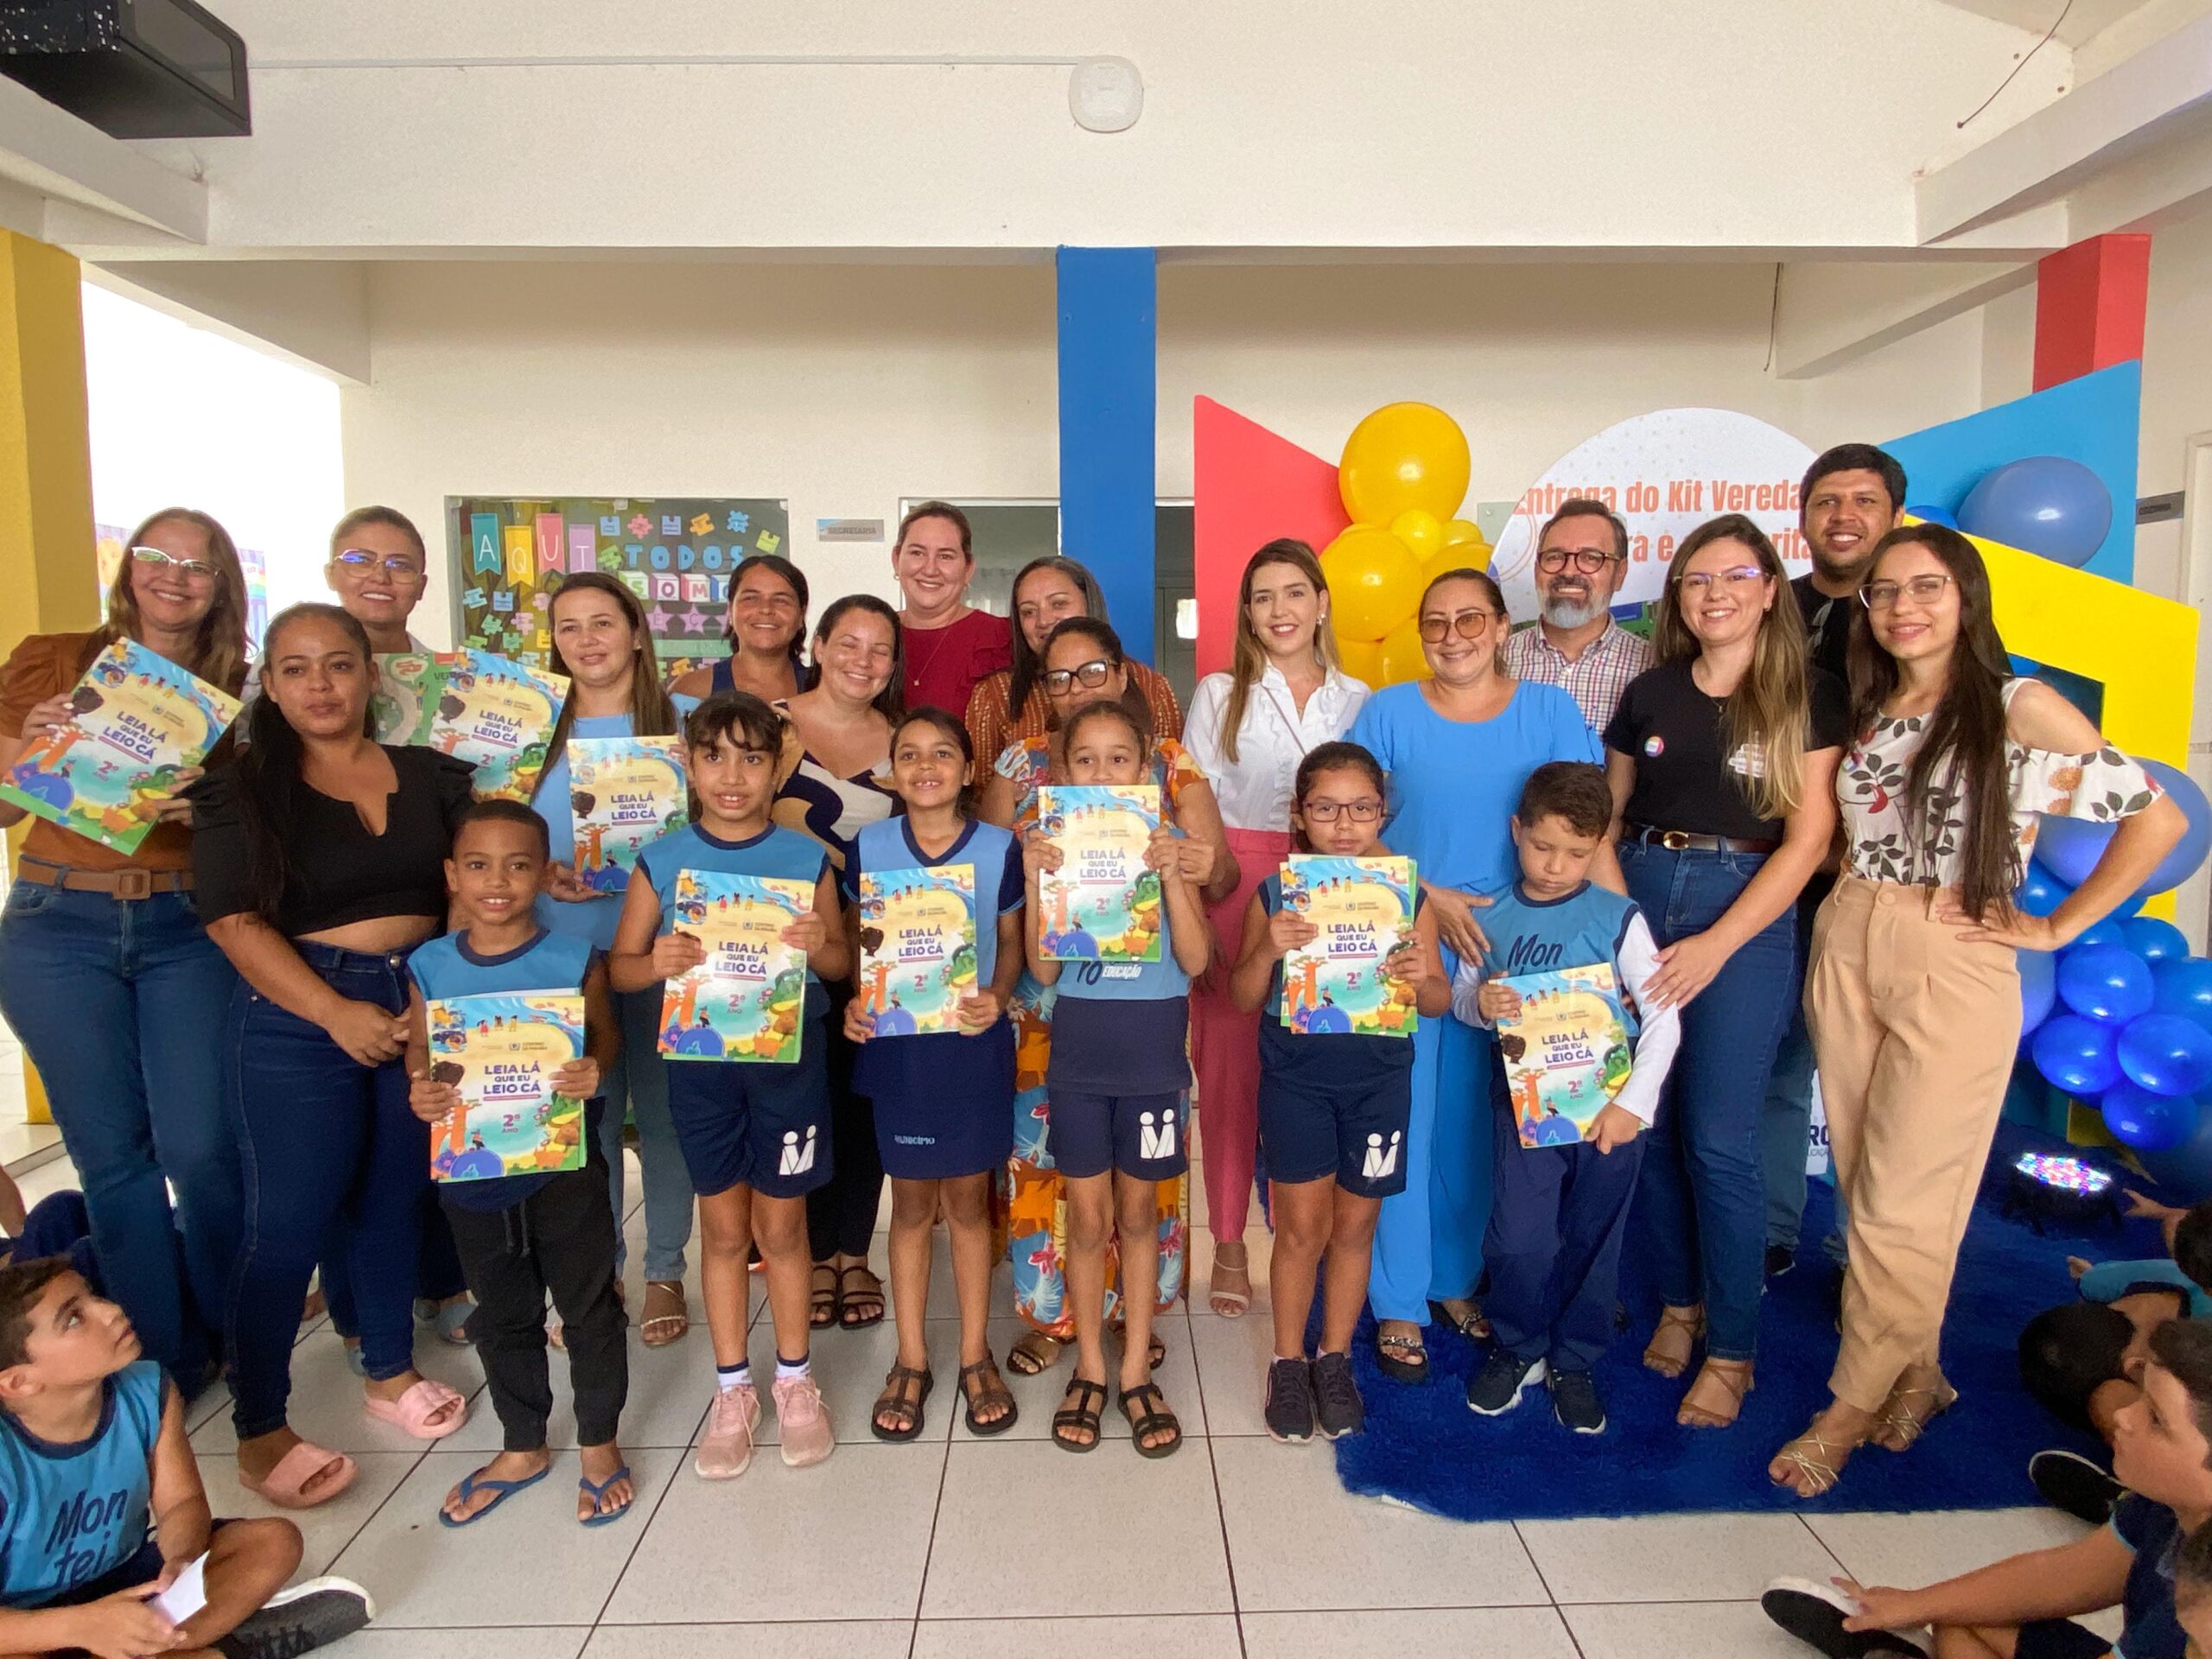 Entrega-de-Livros-1-e-2-anos-4-scaled Estudantes monteirense recebem livros da coleção “Veredas da Leitura e da Escrita”